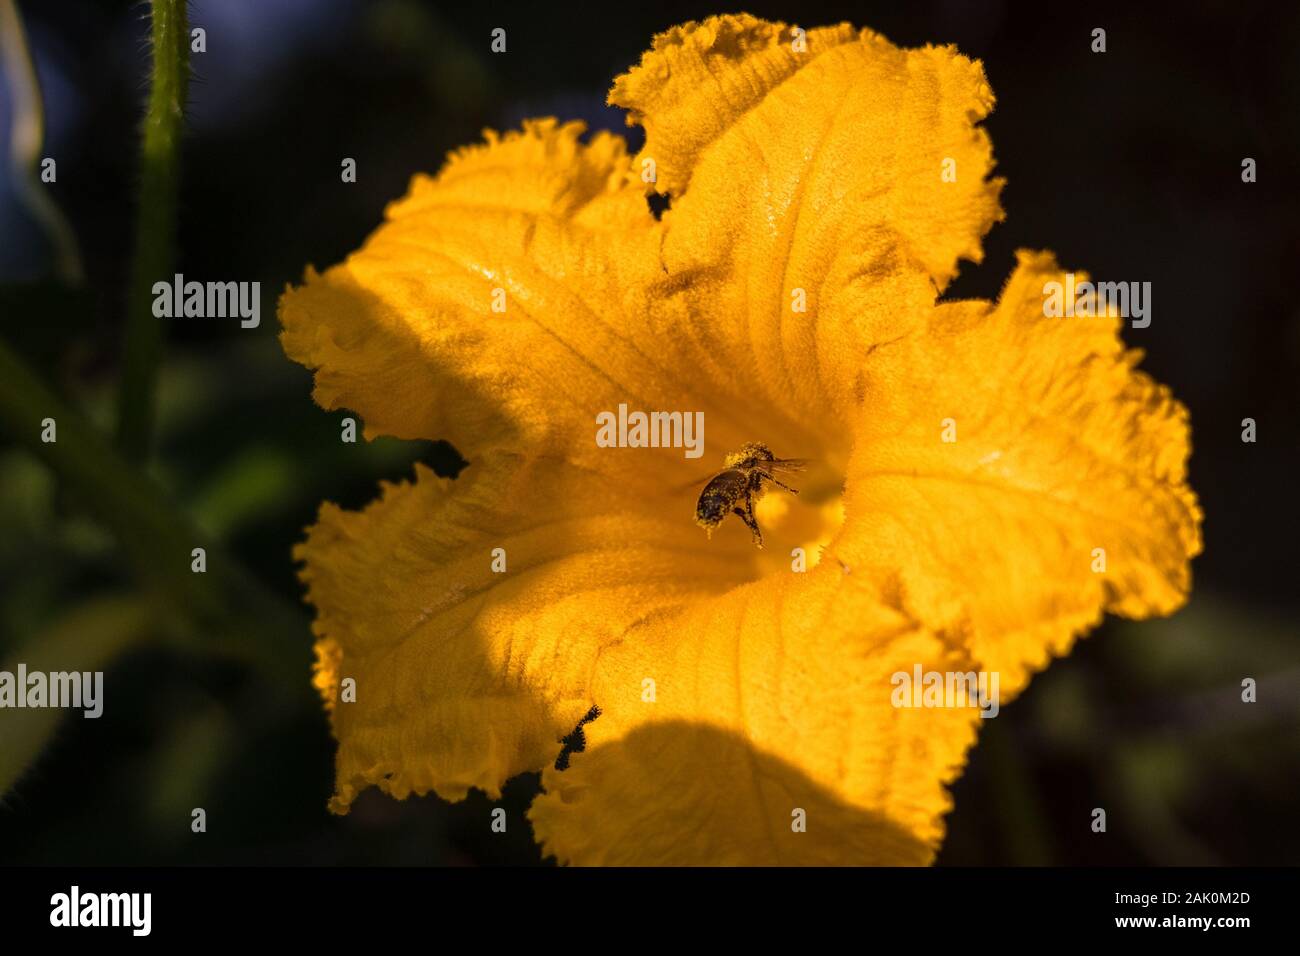 Biene auf Blume - Biene bestäubt gelbe Kürbisblume, sonnigen Sommertag, Nahaufnahme Stockfoto